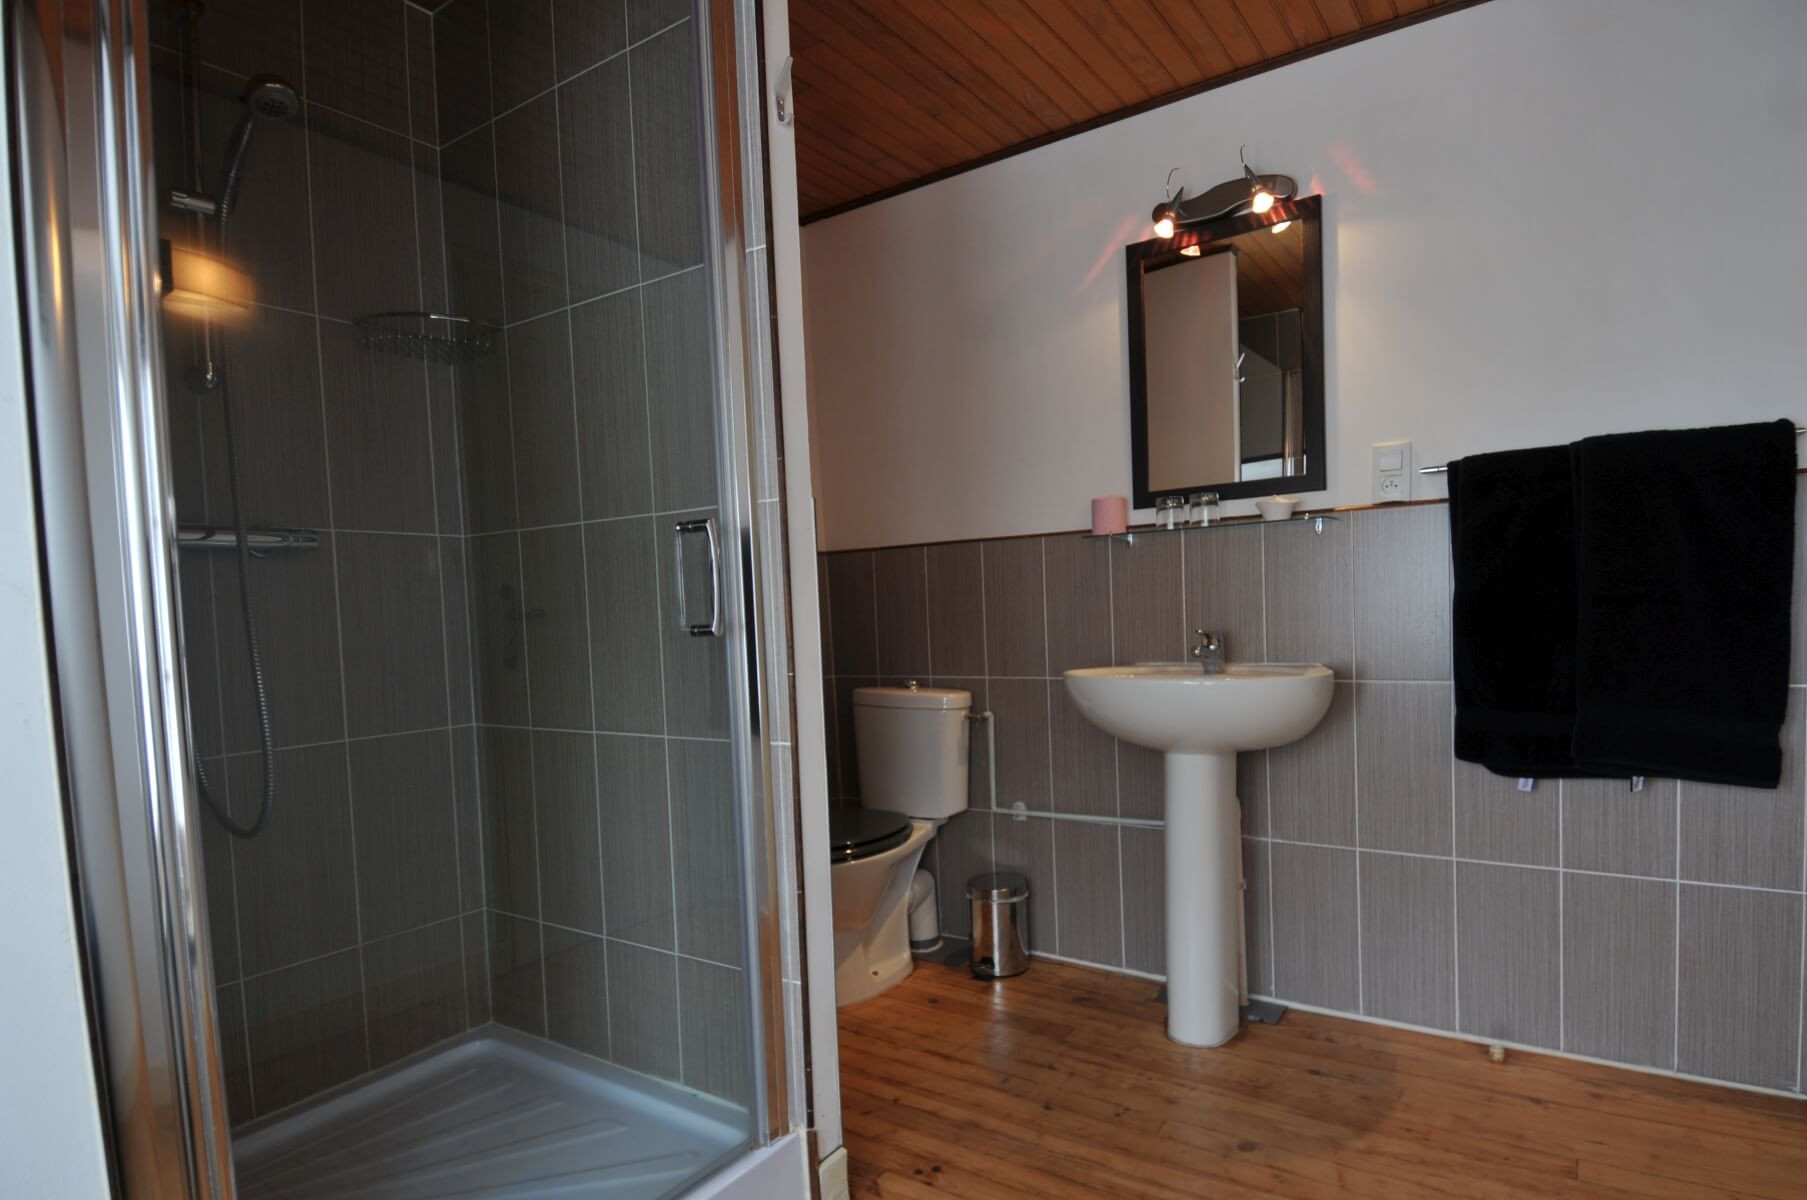 Badkamer van kamer Hindou Kouch